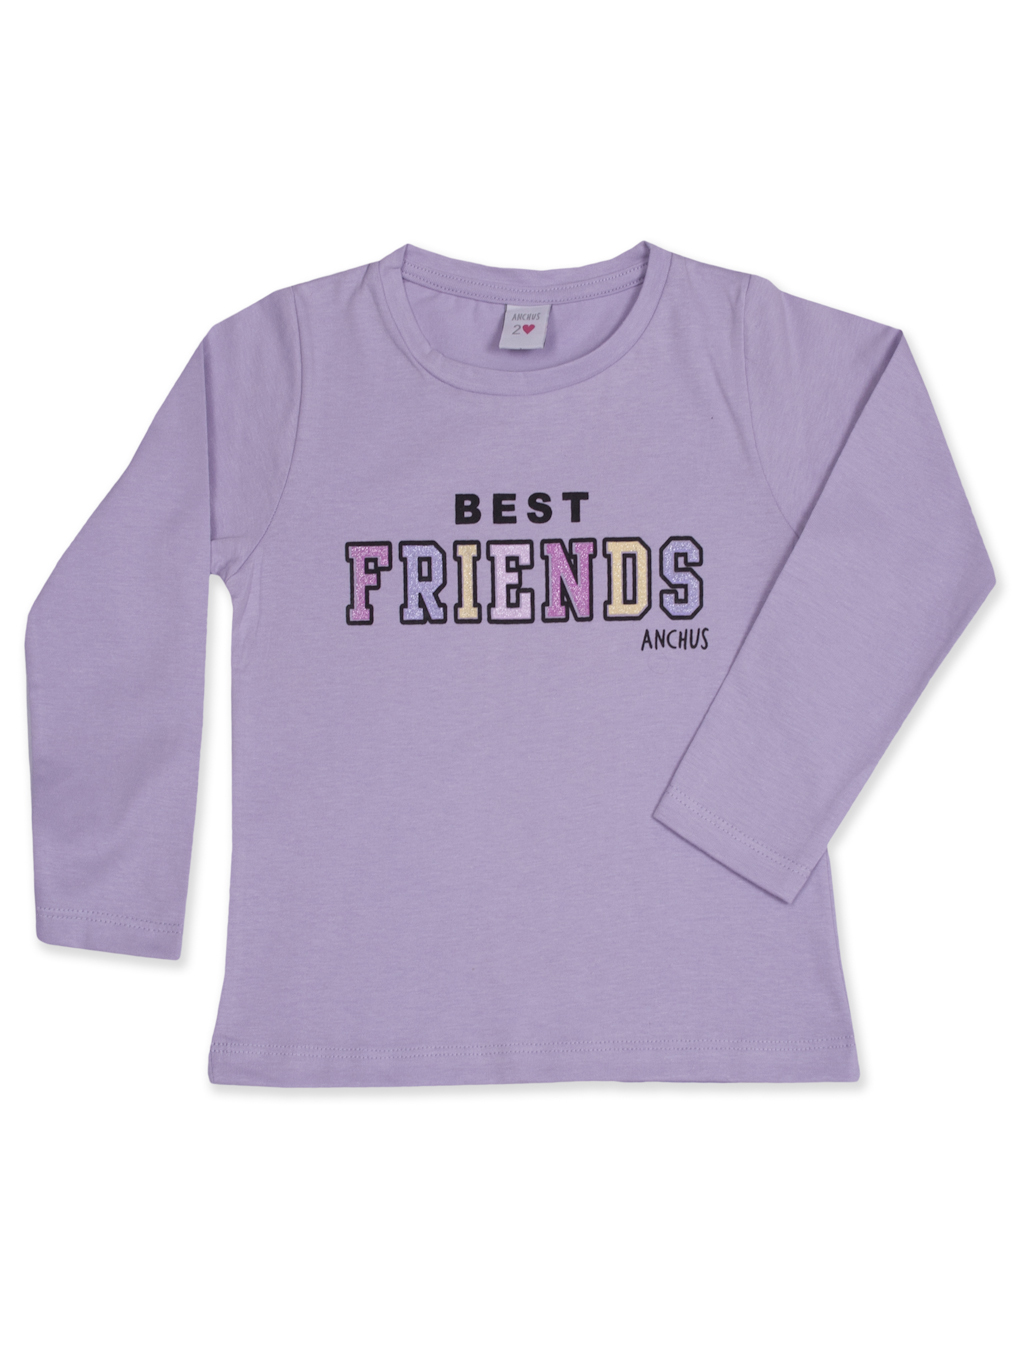 Remera ml Best Friends
Precio: $ 2410,00